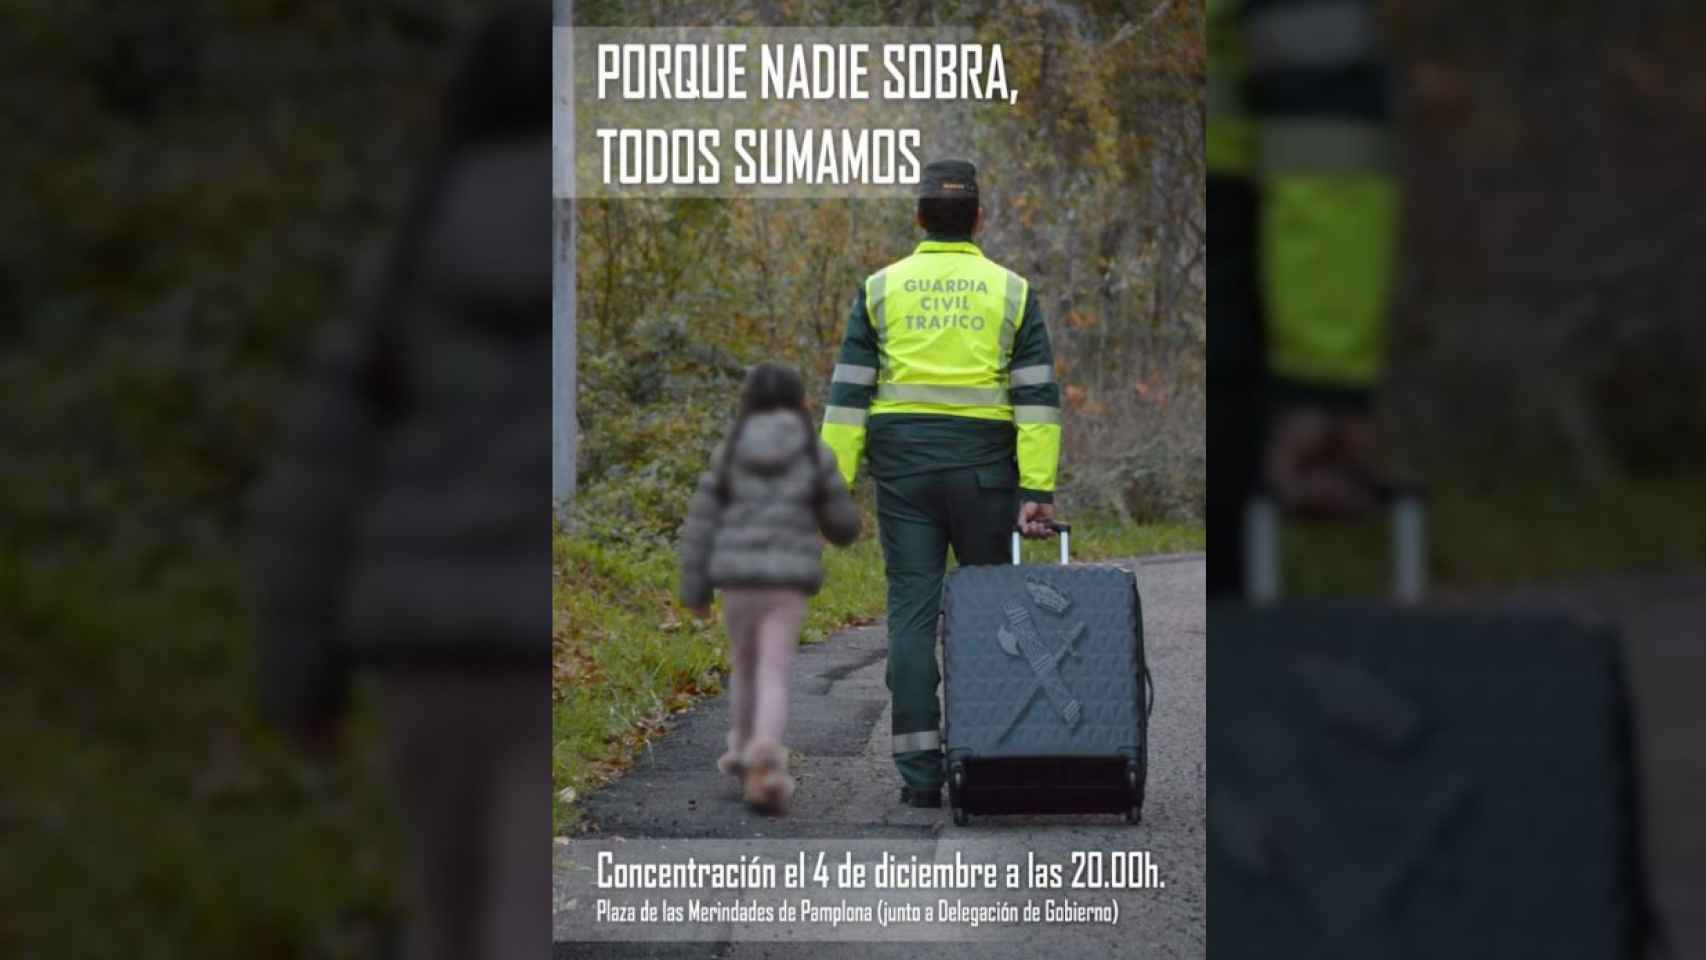 Cartel difundido sobre la concentración en apoyo a la Guardia Civil en Pamplona.